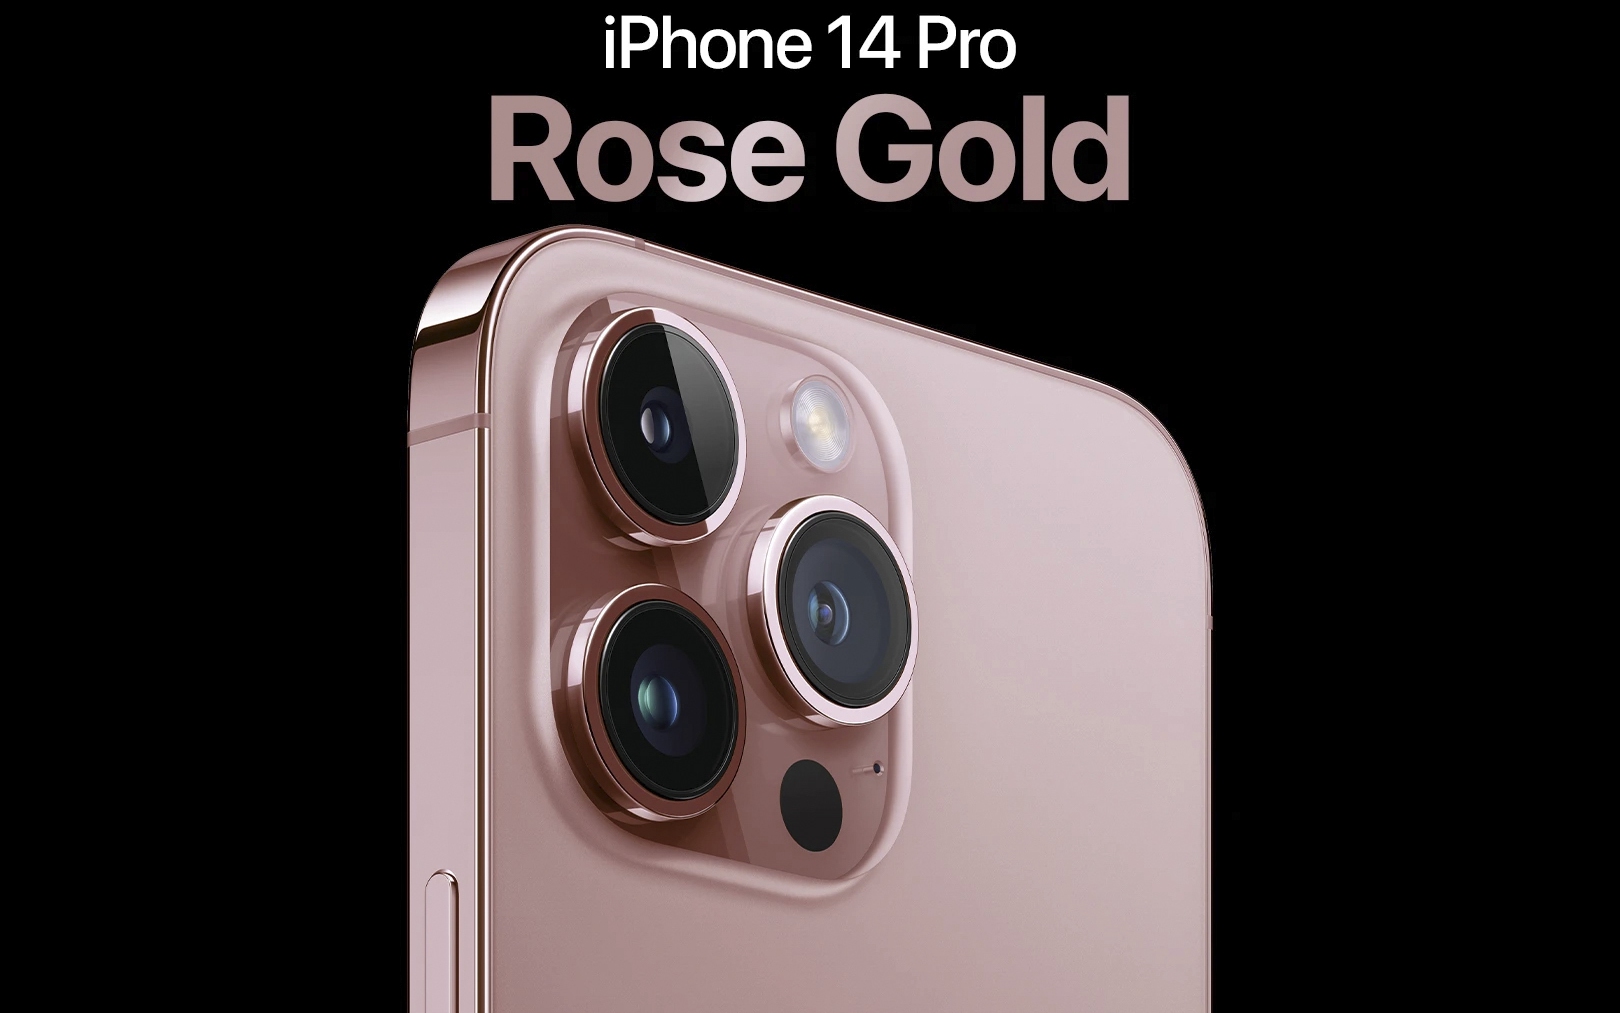 Bạn có yêu thích màu hồng và tím? Vậy thì phiên bản iPhone 14 Pro màu hồng và tím sẽ khiến bạn cảm thấy yêu thích nó ngay lập tức. Hãy xem hình ảnh và cảm nhận sự đẳng cấp và sang trọng từ phiên bản iPhone 14 Pro này.